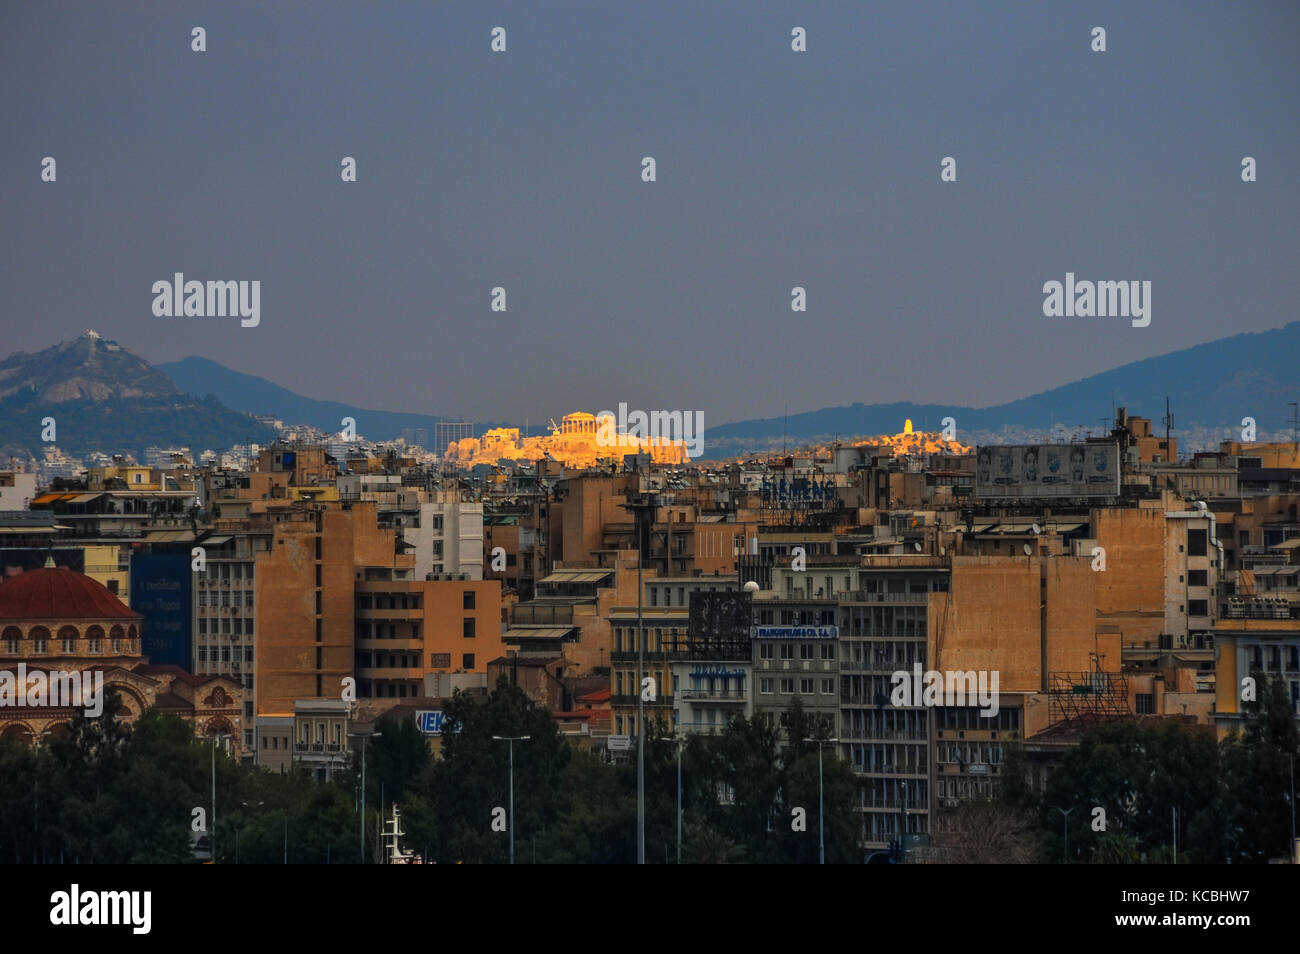 view of the acropolis from Piraeus, Athens, Greece Stock Photo